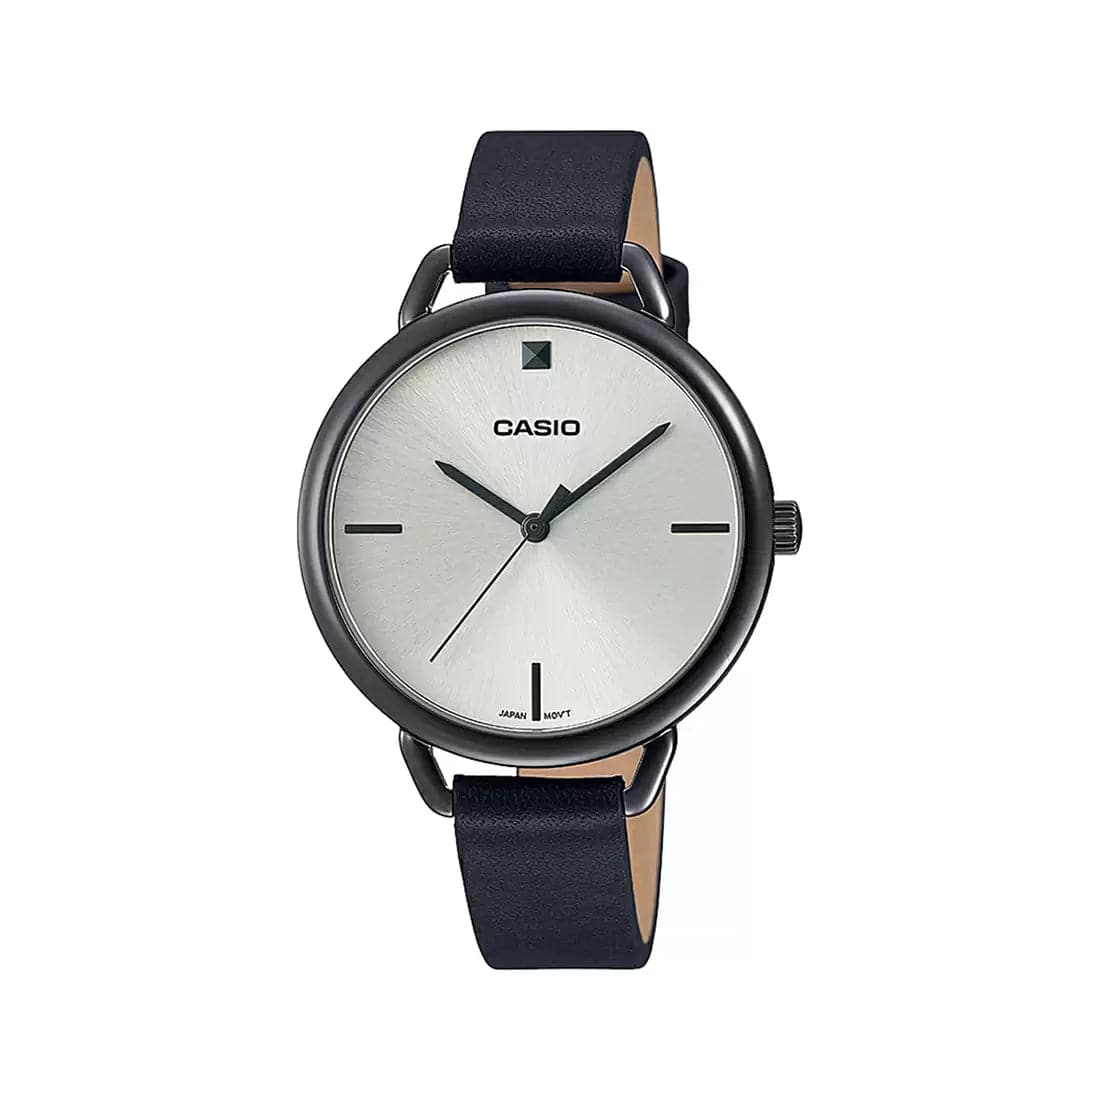 Casio Enticer Lady's Analog Watch - Kamal Watch Company